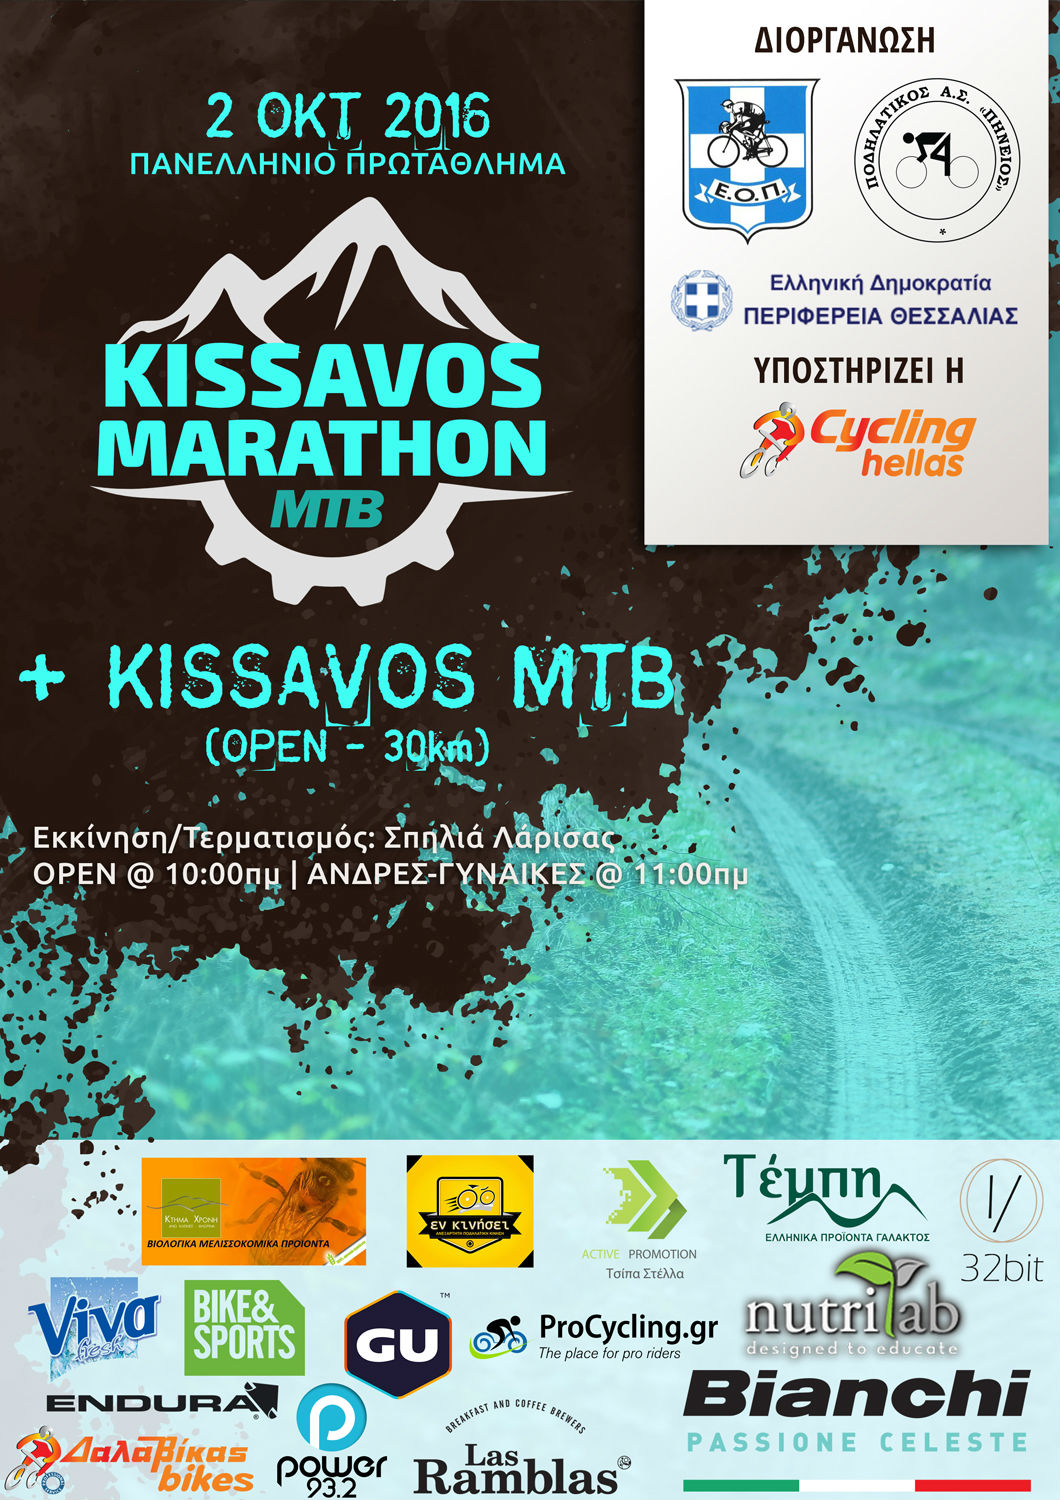 ΠΡΟΚΗΡΥΞΗ 4ος Kissavos Marathon 2016